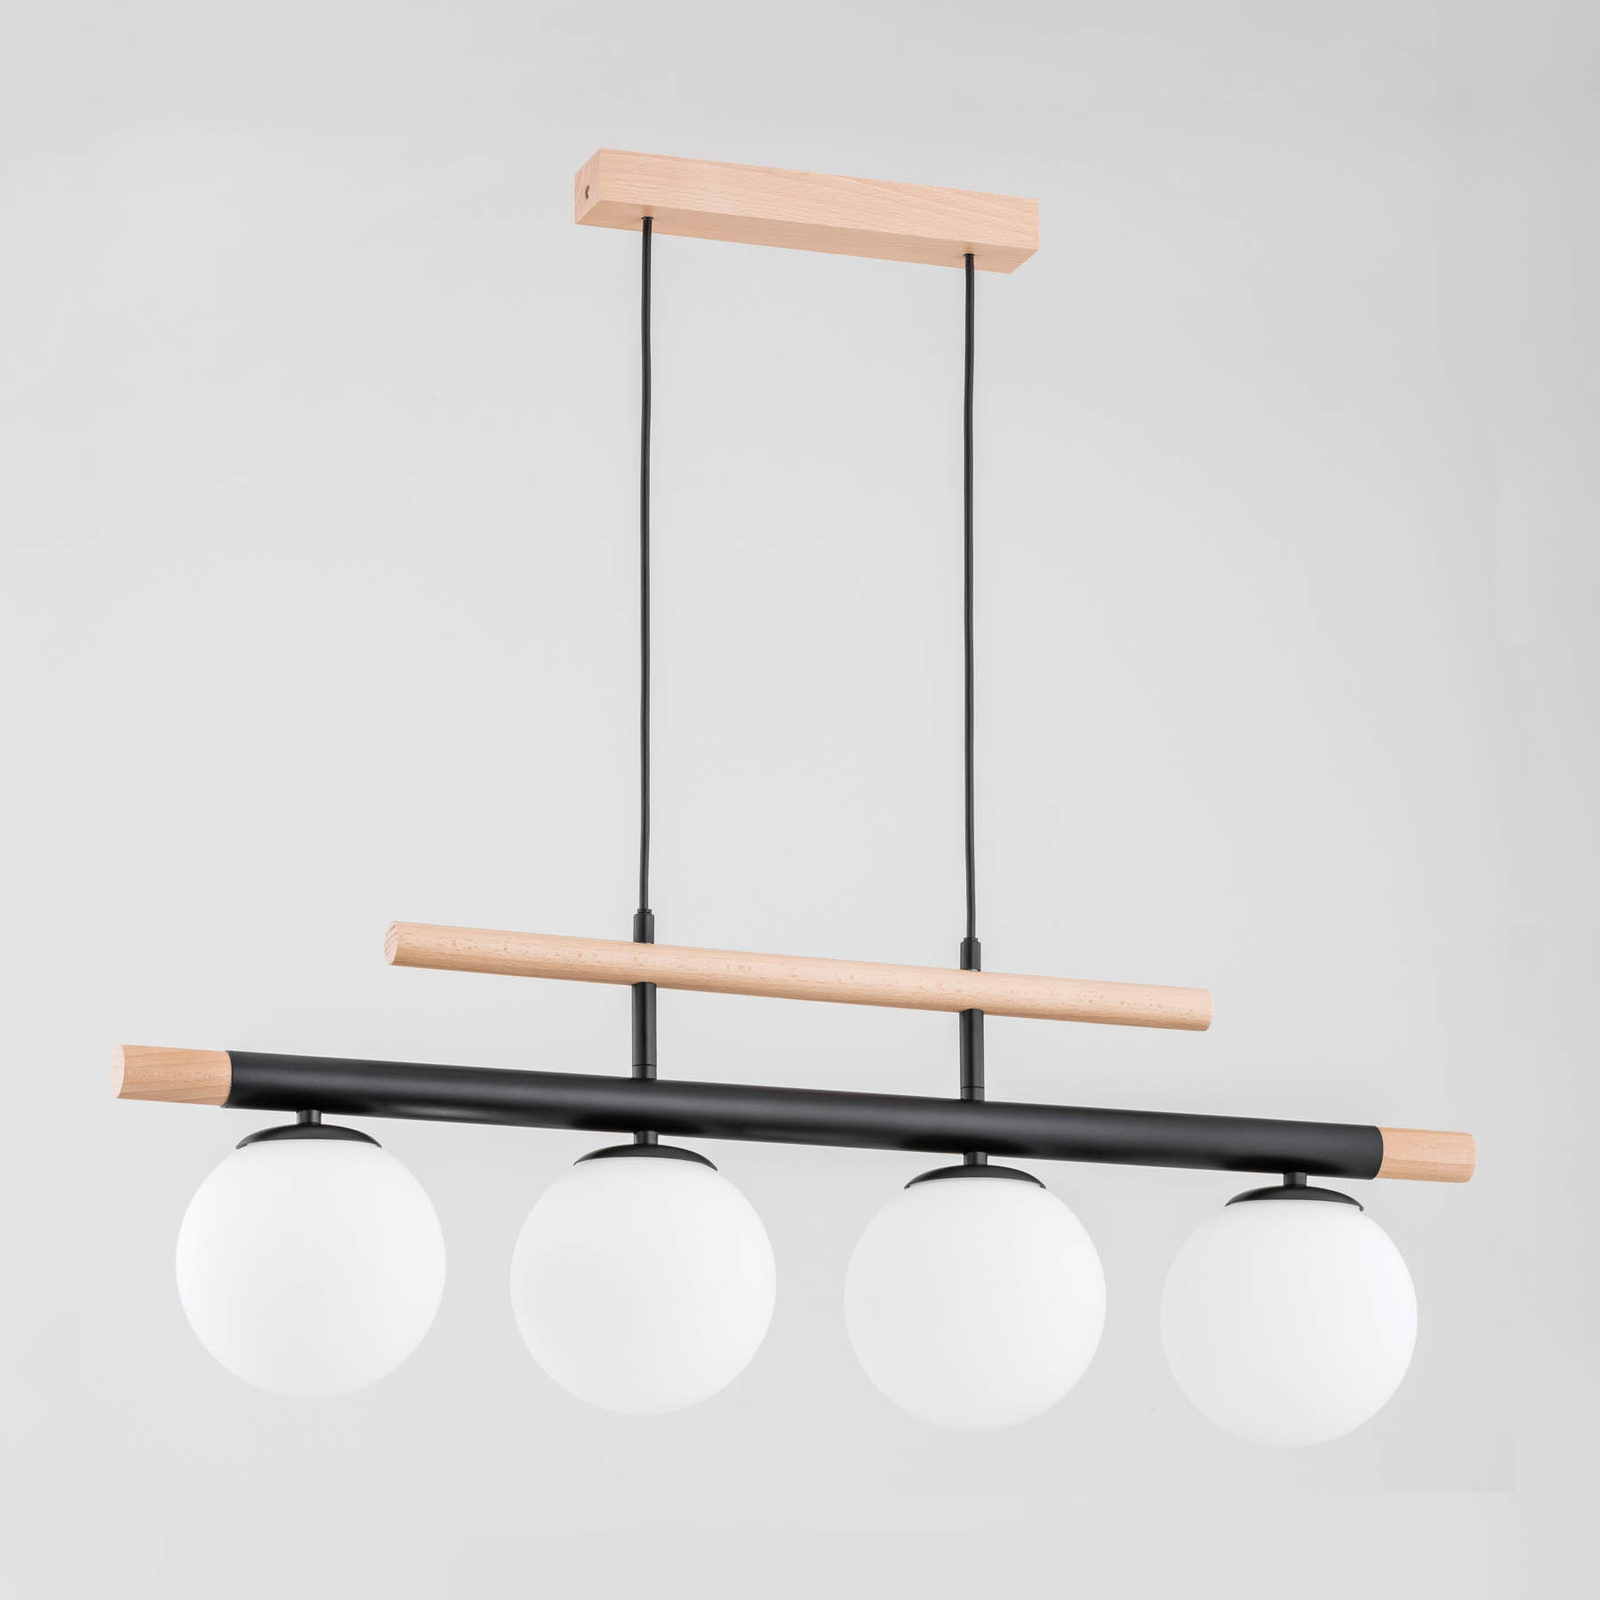 Trendy hanglamp van hout, 4-lamps